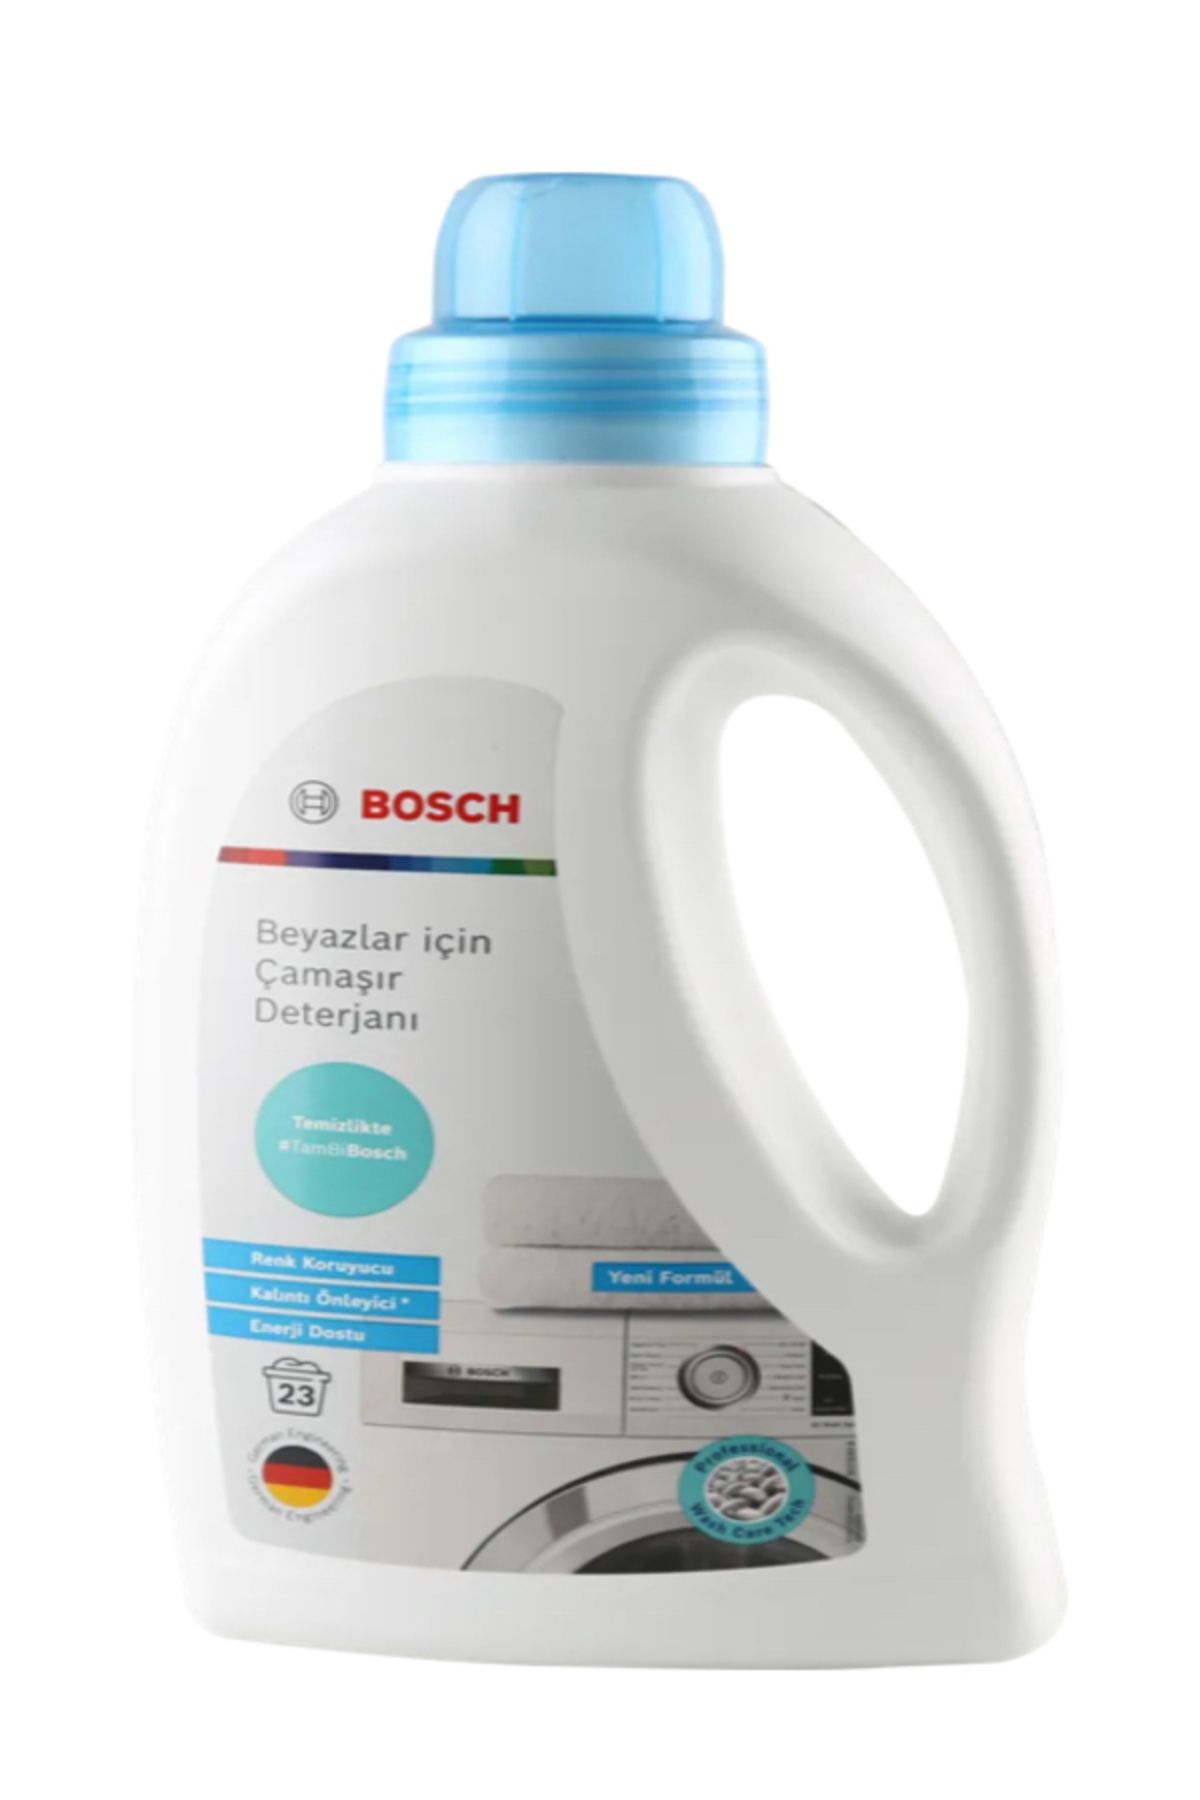 Bosch Beyazlar için çamaşır deterjanı 312326 - 4’lü